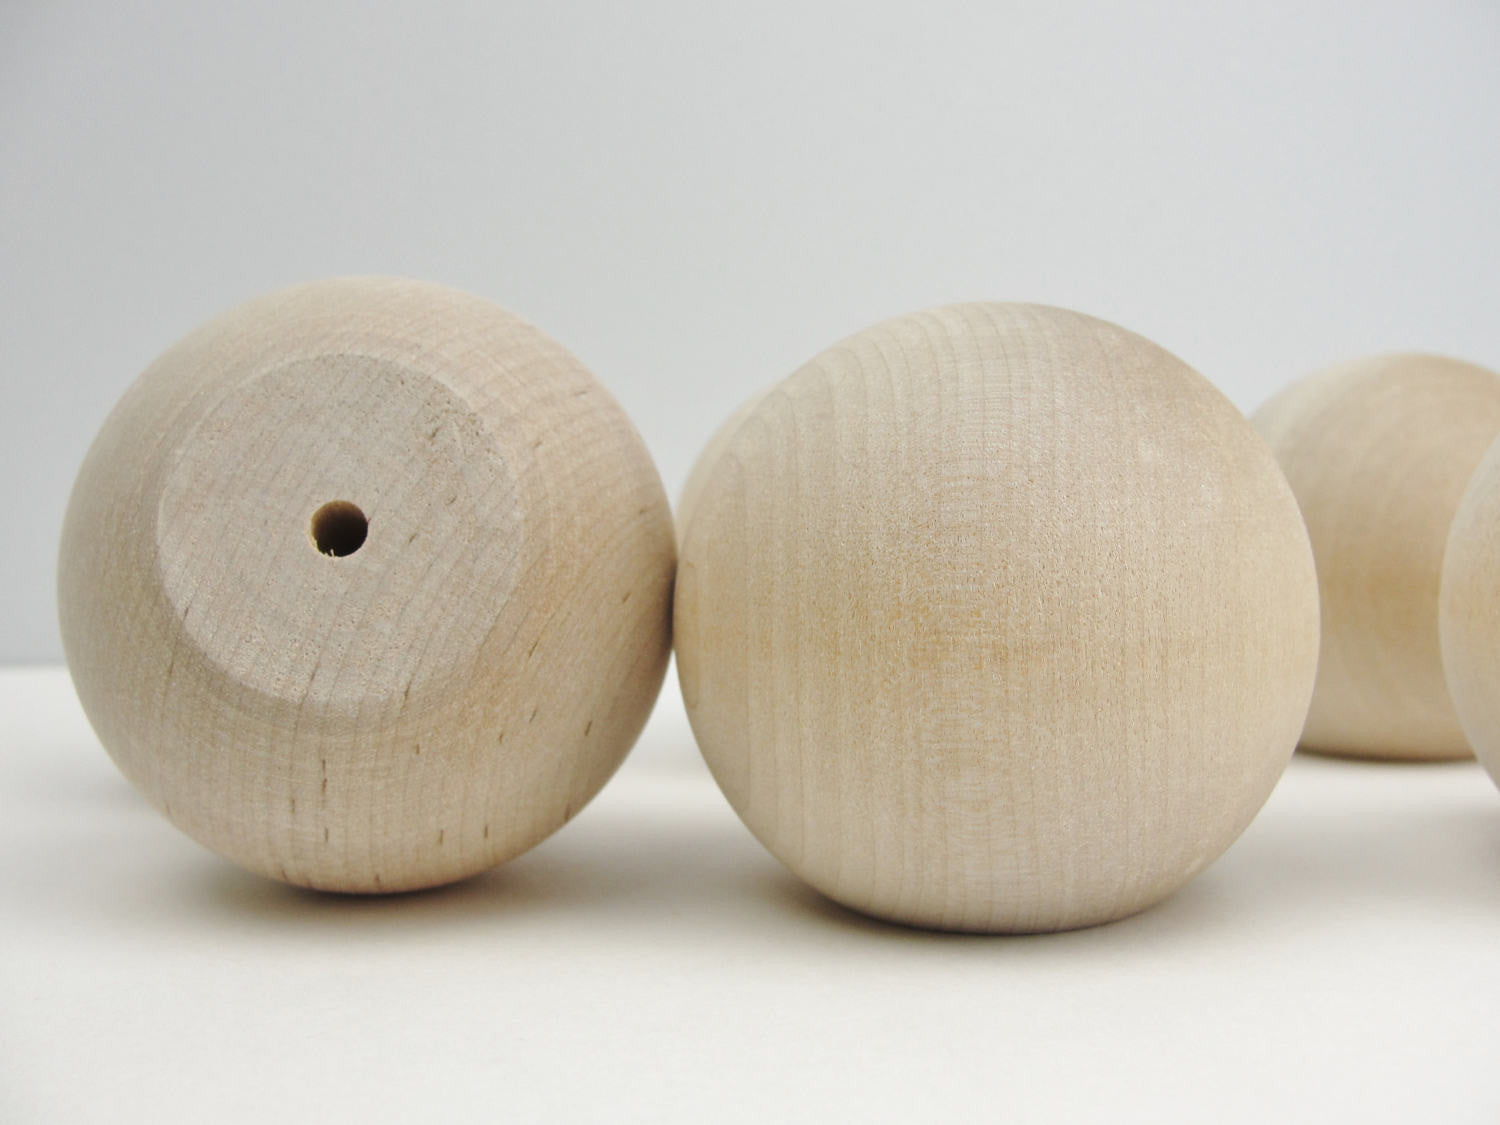 2-1/2 inch Wooden Balls, Bag of 2 Unfinished Natural Hardwood